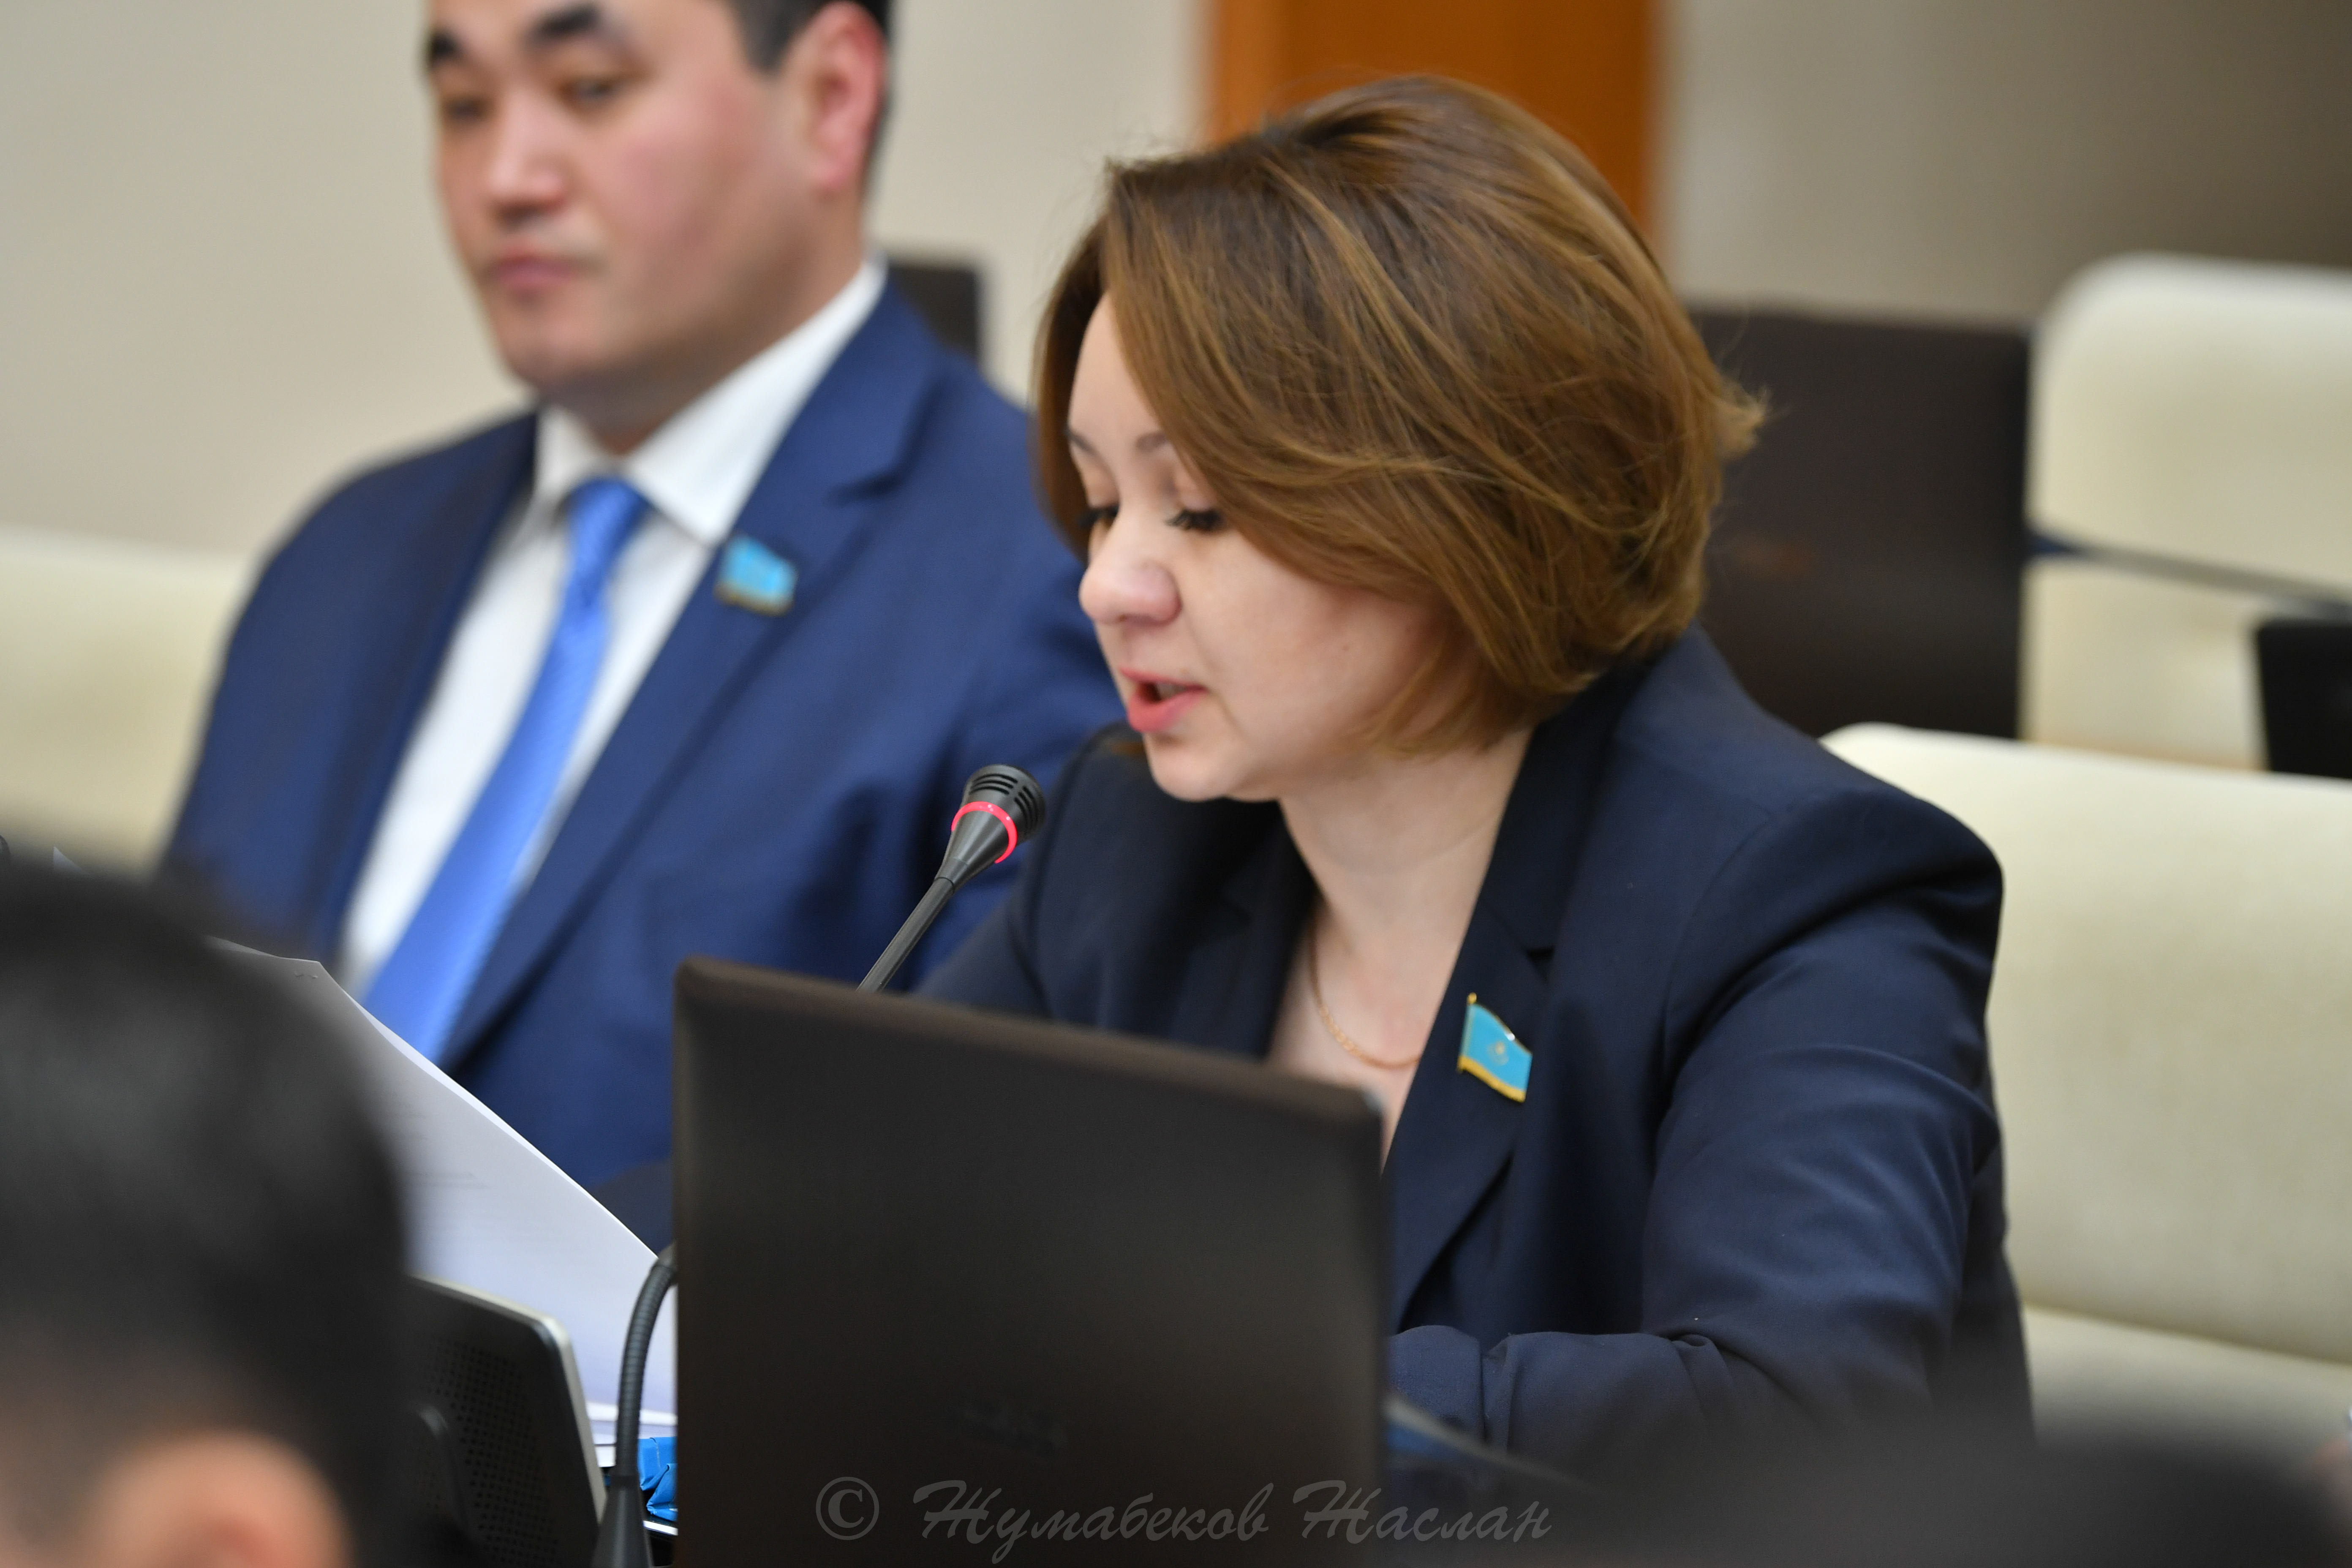 Сегодня на Пленарном заседании Мажилиса Парламента приняли в работу проект закона "О противодействии торговле людьми в Республике Казахстан"